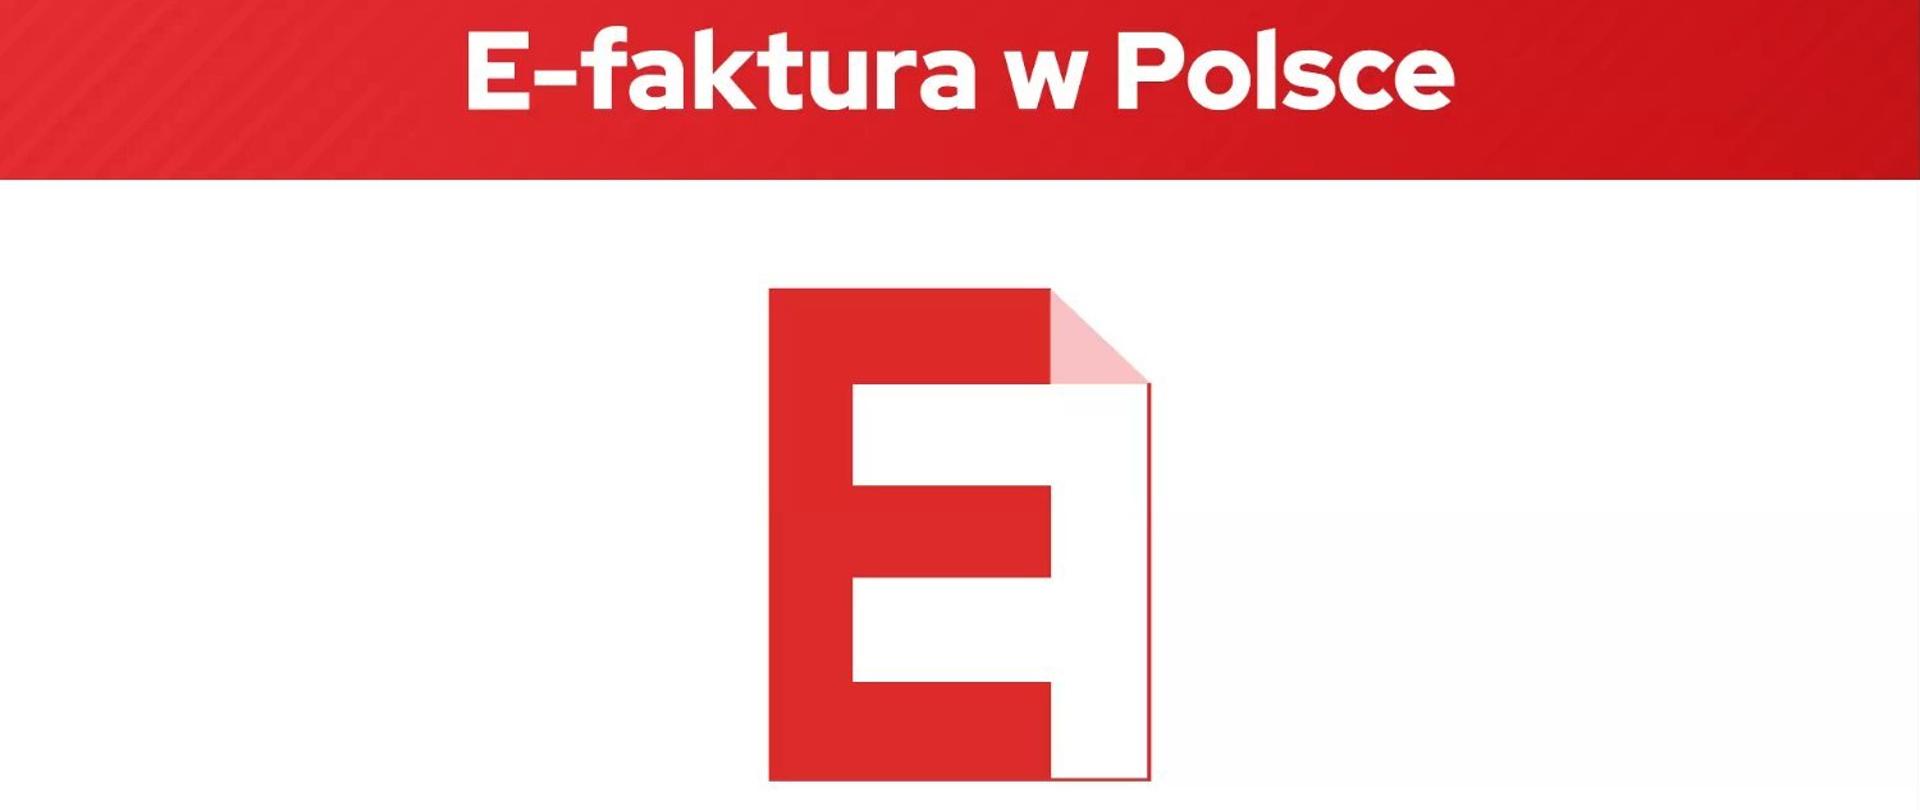 Grafika z napisem E-faktura w Polsce, na środku litera E wpisana w kartkę.